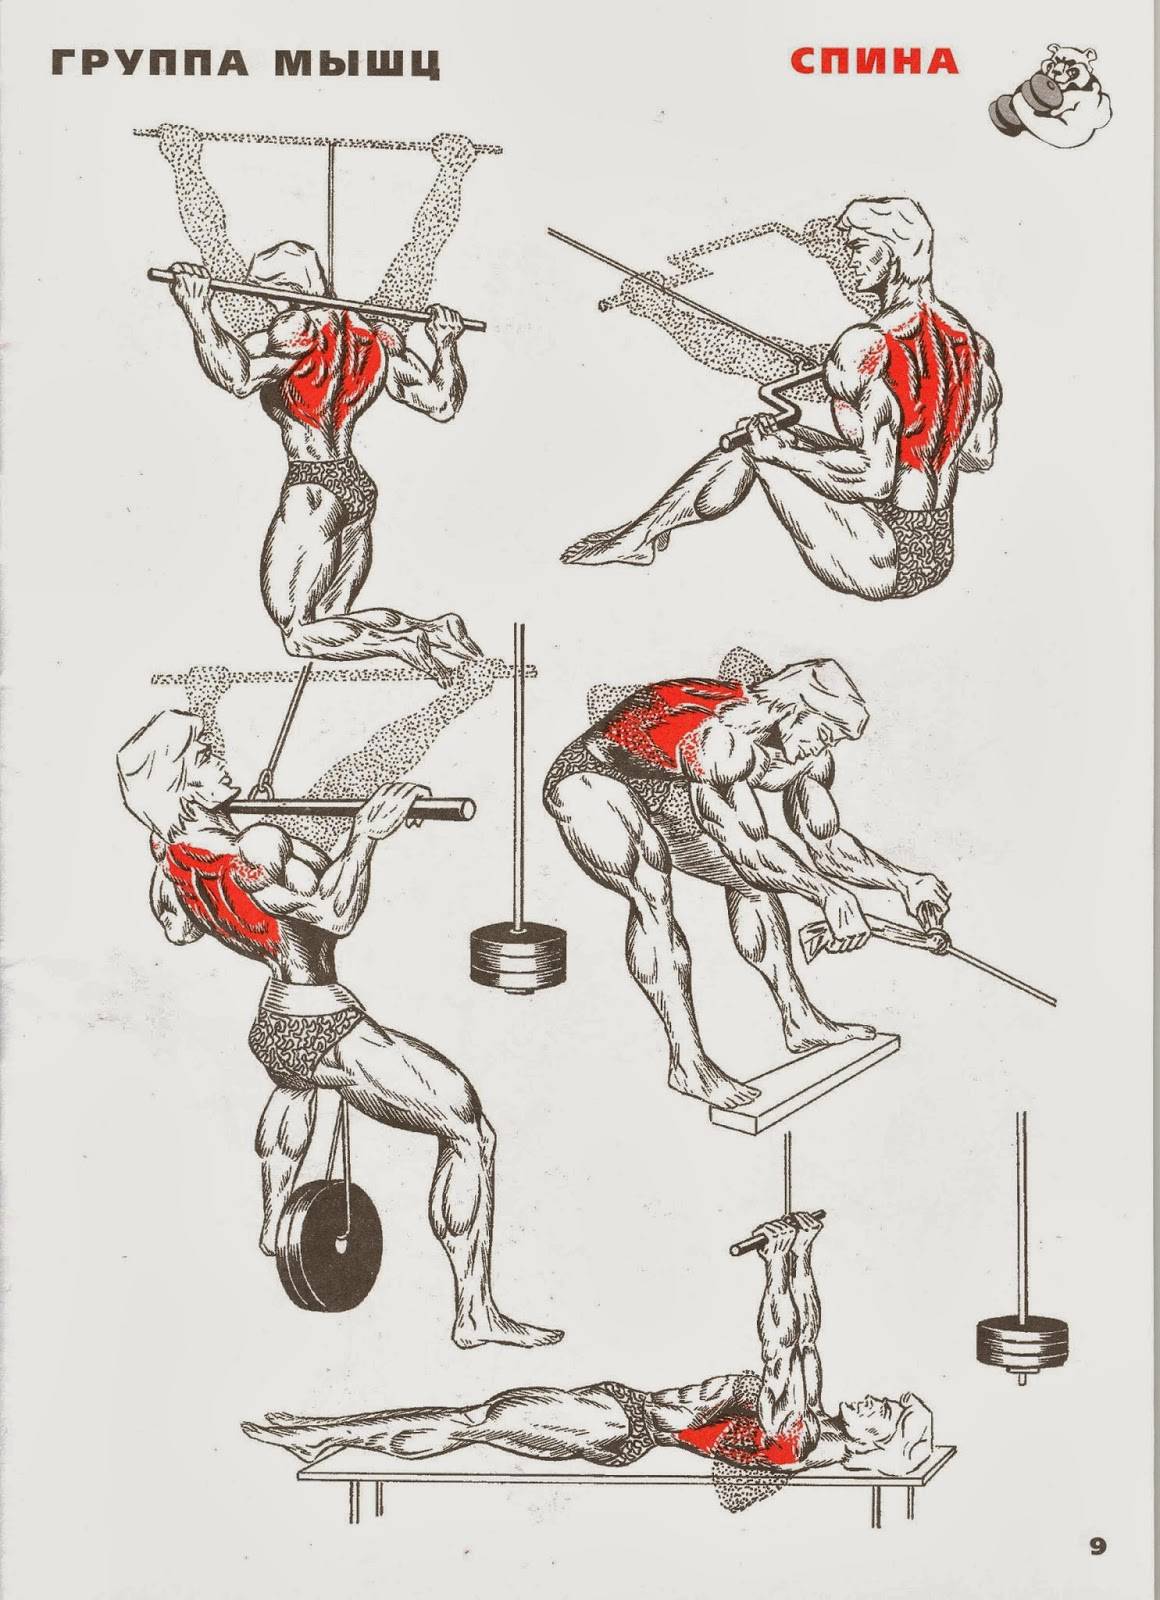 Как правильно прокачать игру. Упражнения для тренировки мышц спины в тренажерном зале. Упражнения для прокачки мышц спины. Базовые упражнения на спину в тренажерном зале. Упражнения на спину в тренажерном зале для мужчин.